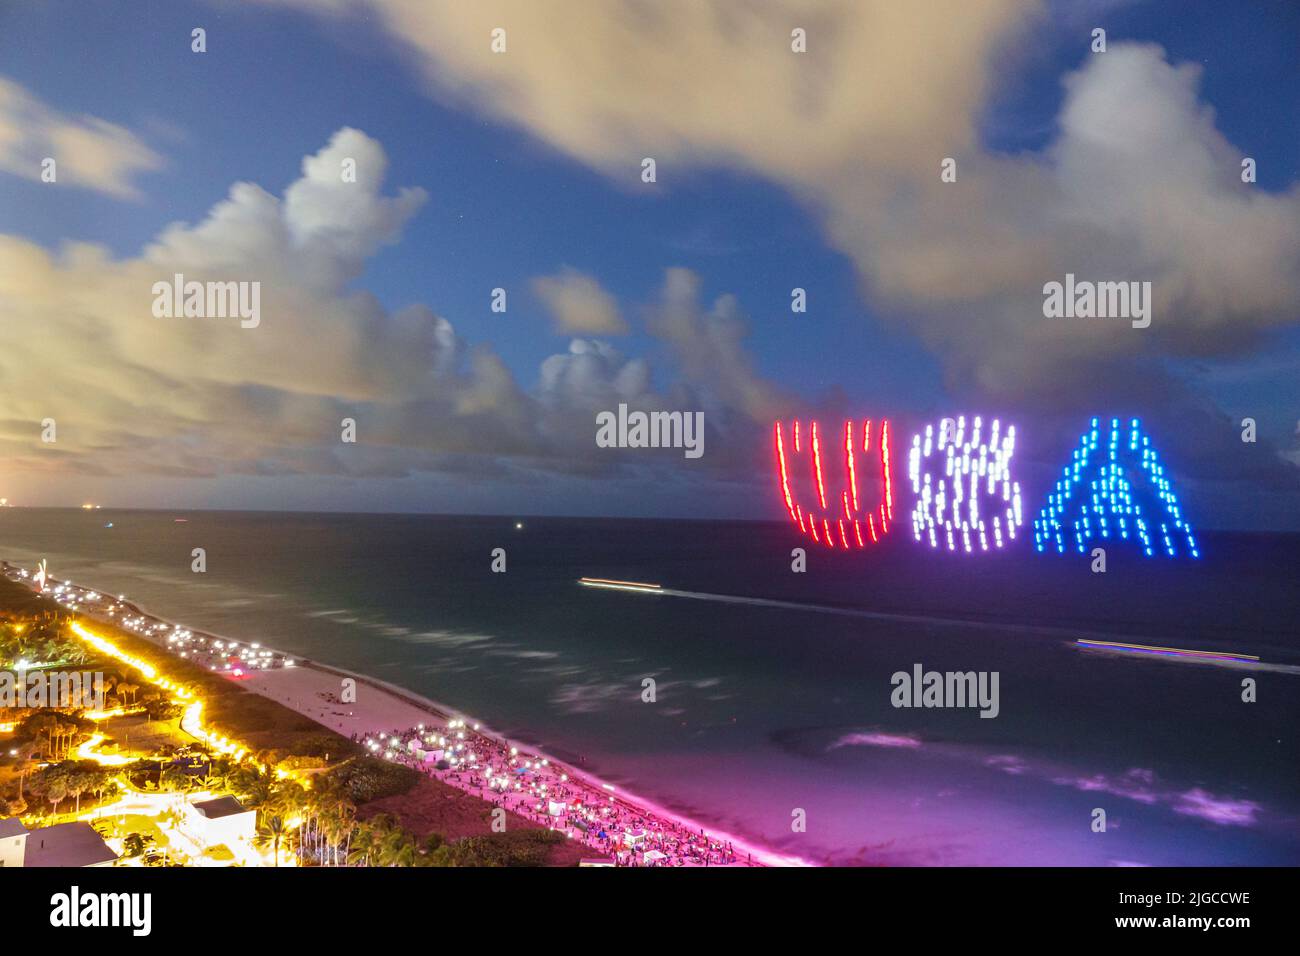 Miami Beach Florida, Ocean Terrace Fire on the Fourth 4th of July Festival event Celebration, droni di spettacolo di luci che formano gli Stati Uniti, vista aerea dall'alto o Foto Stock